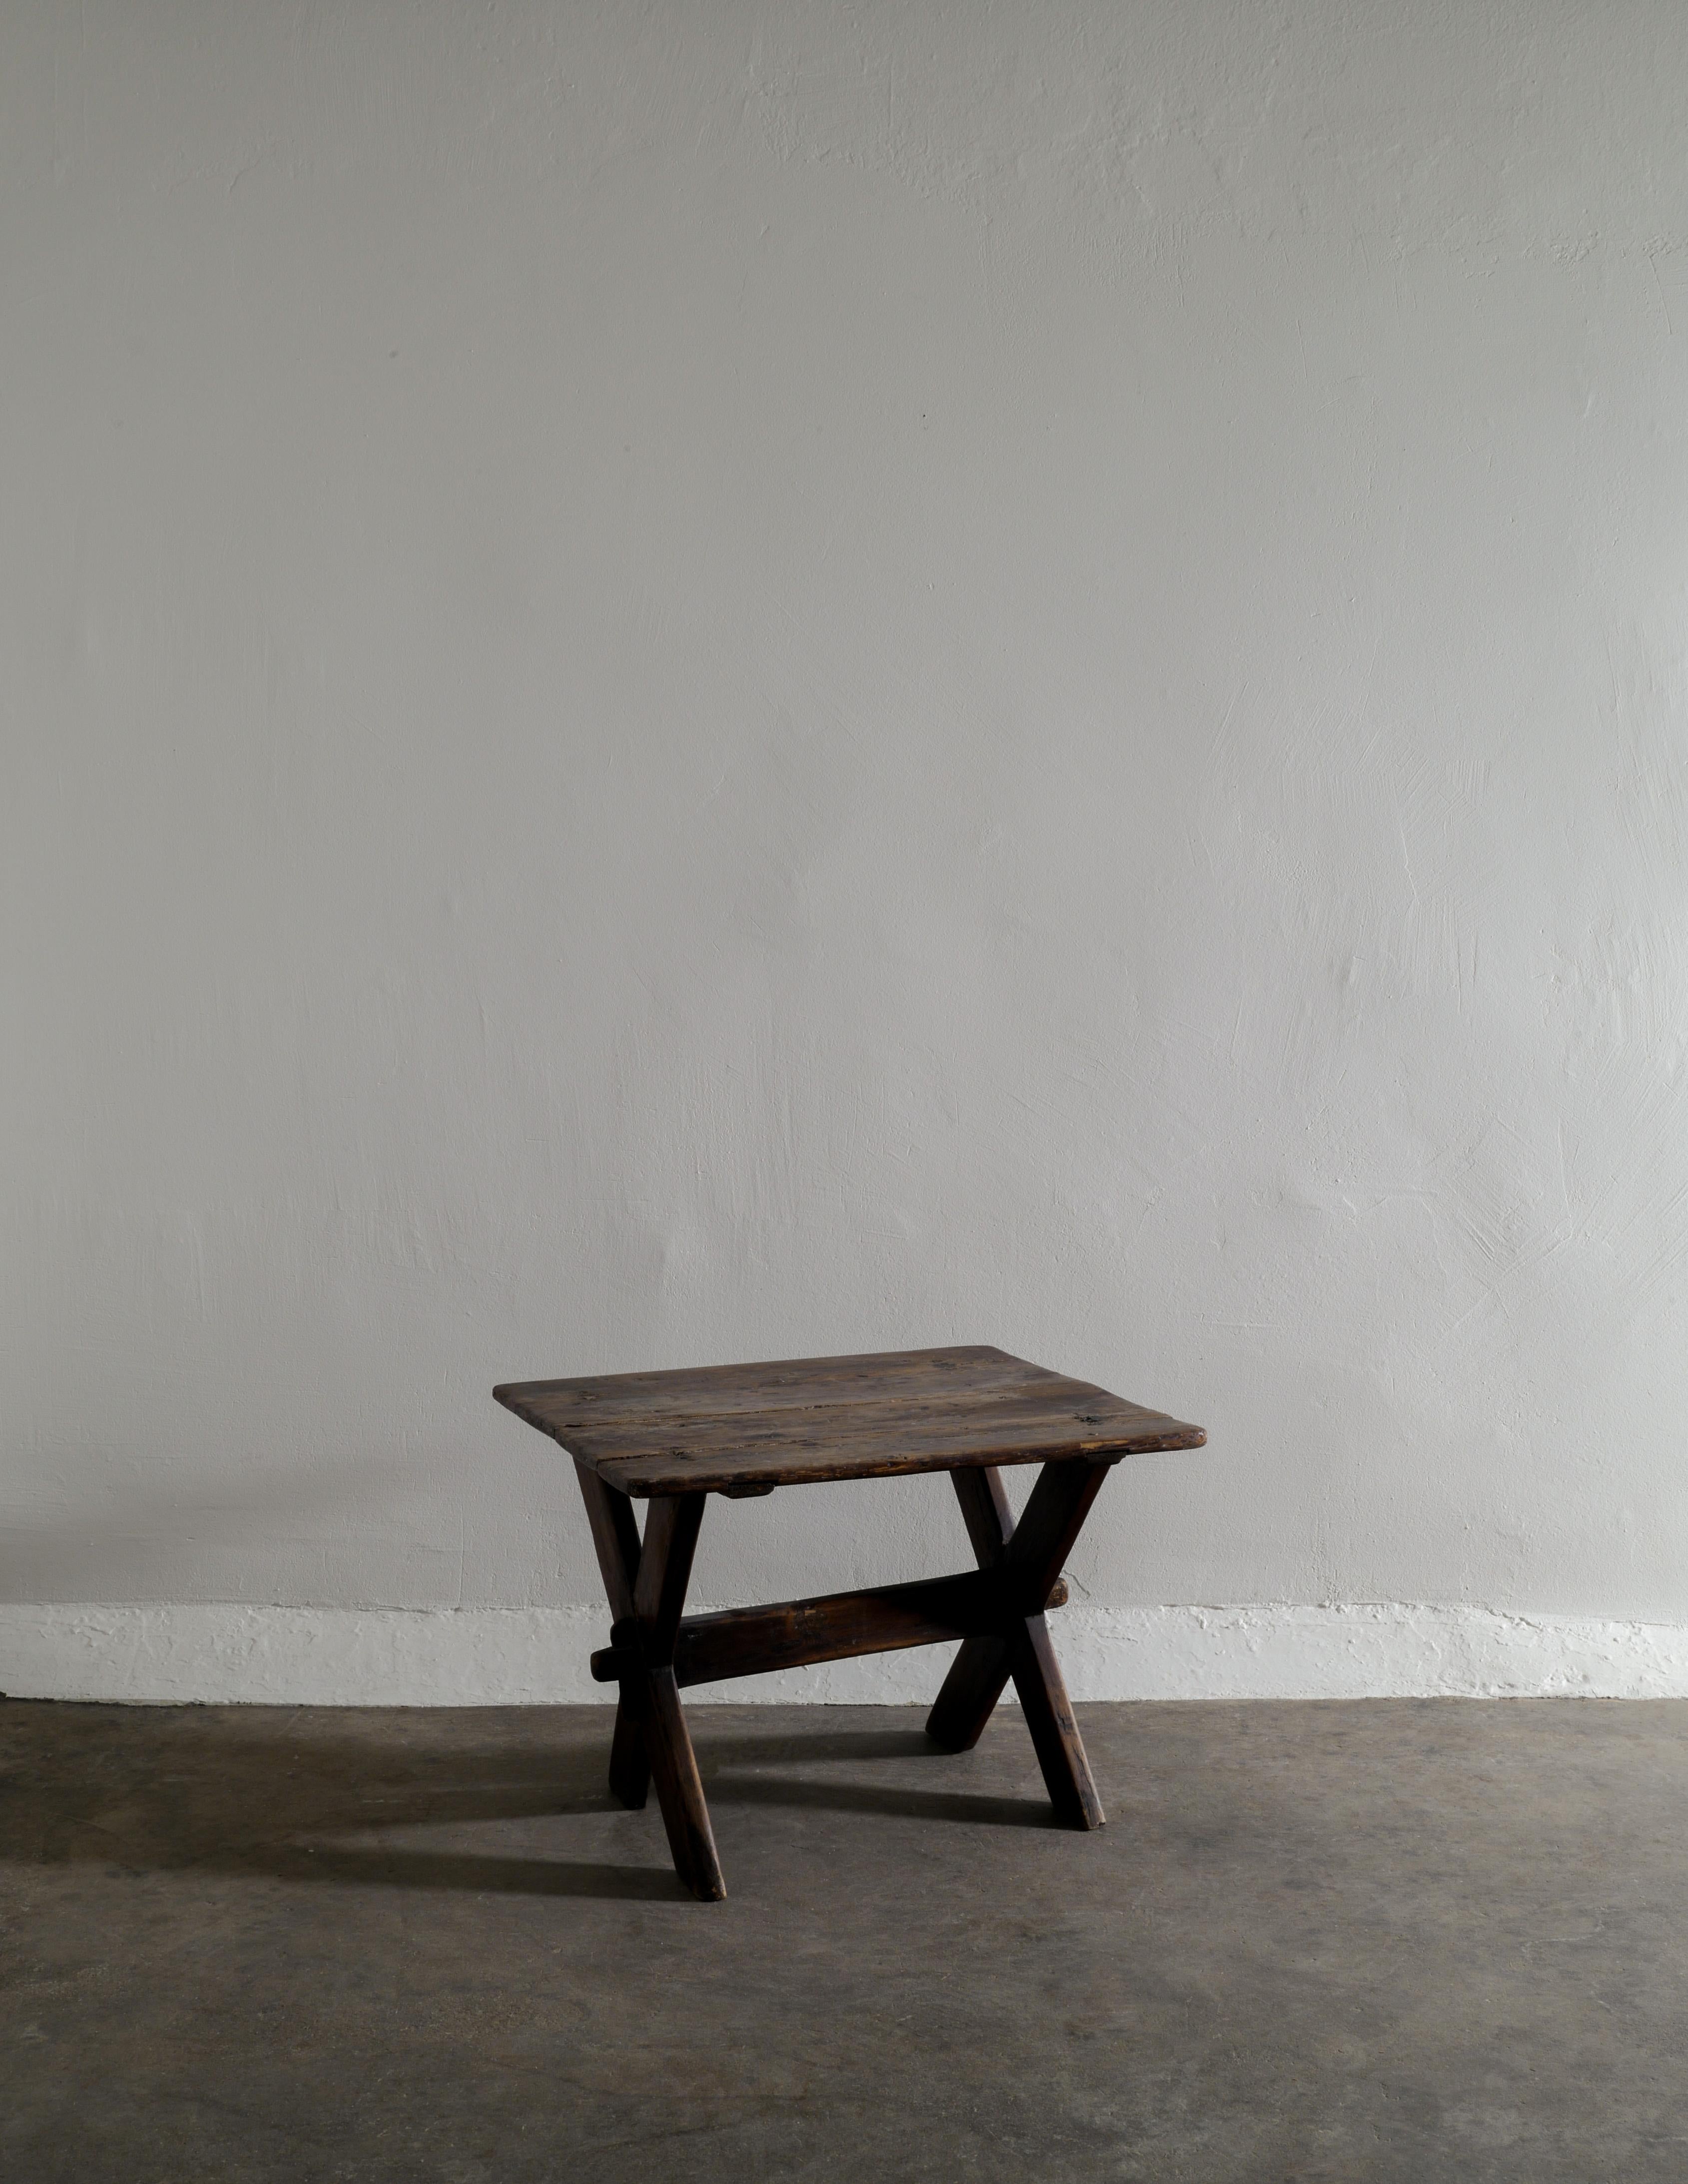 Seltener Tisch im primitiven Wabi-Sabi-Stil, hergestellt in Schweden aus dunkel gebeizter Kiefer, perfekt als Beistell-, Kaffee- oder Eingangstisch. In gutem Vintage-Zustand mit alters- und gebrauchsbedingter Patina. Stabil. 

Abmessungen: H: 45